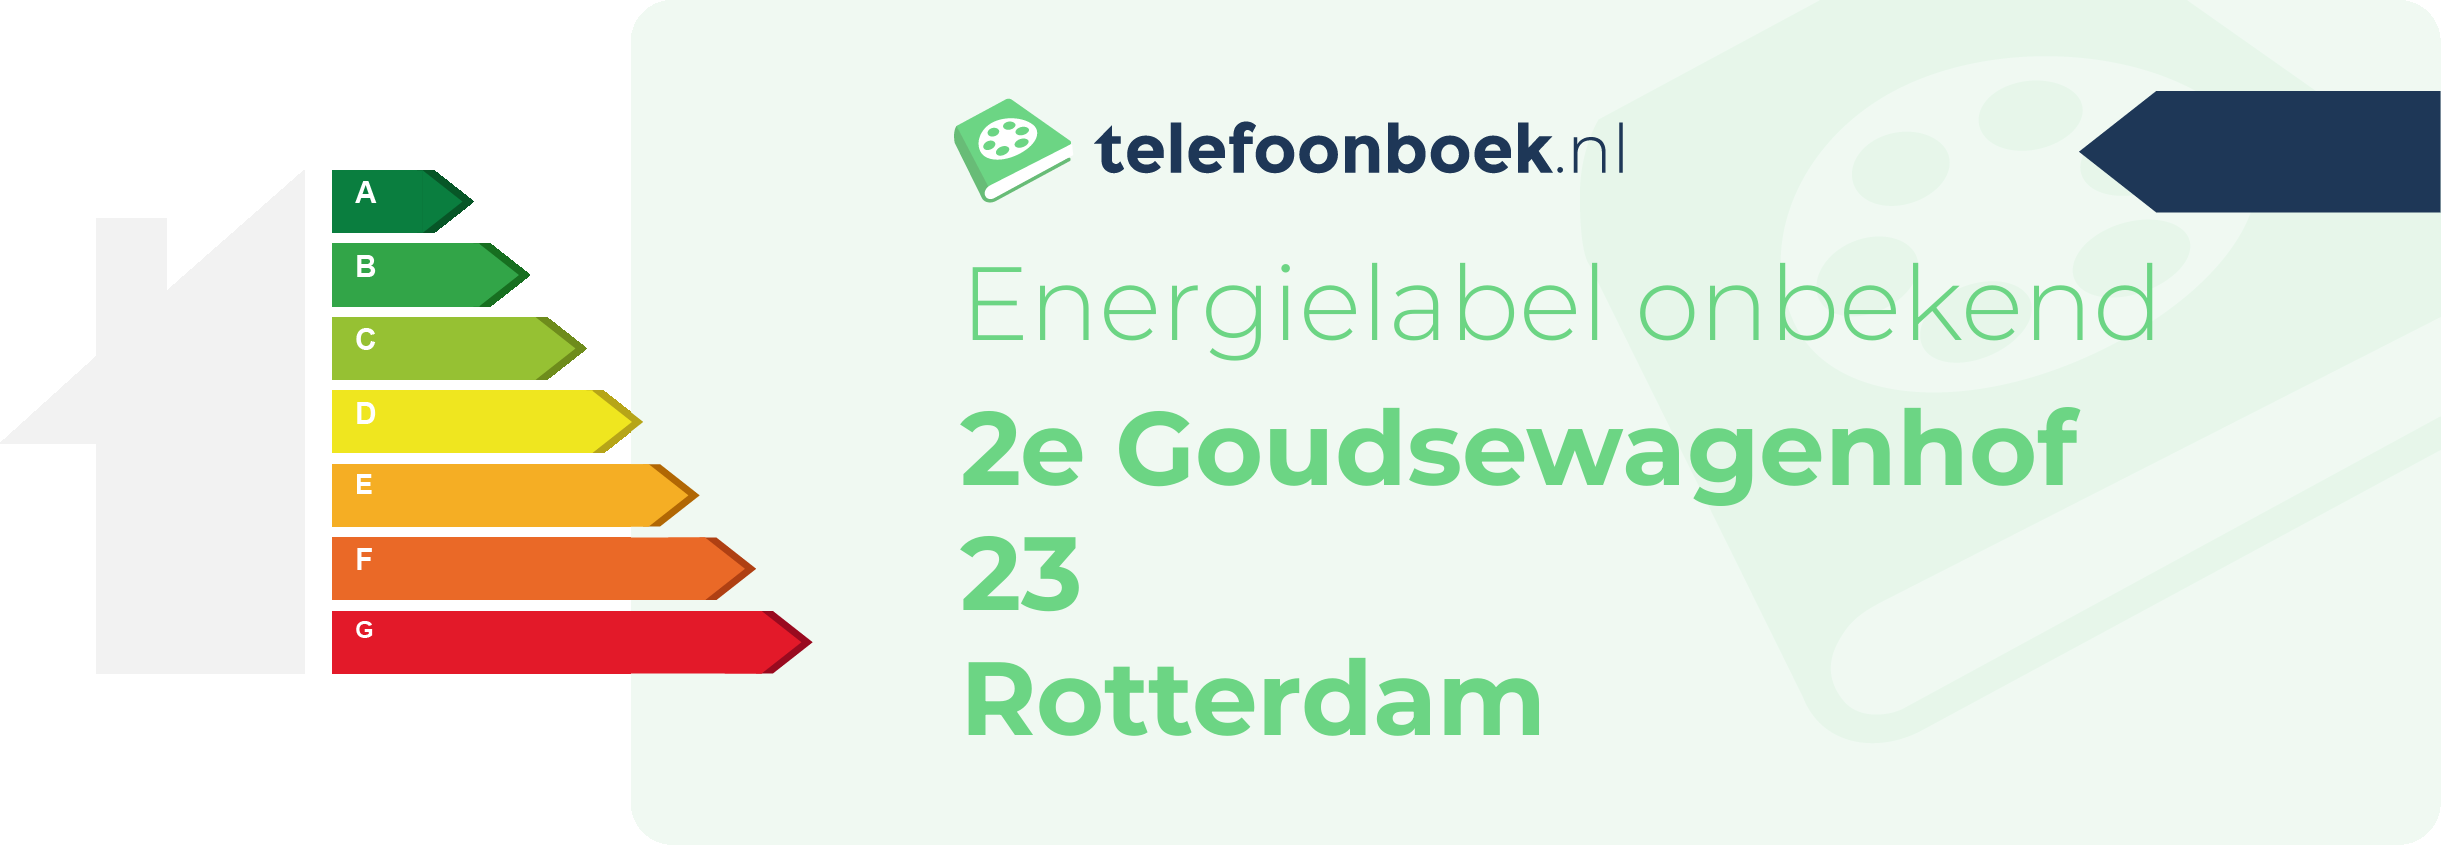 Energielabel 2e Goudsewagenhof 23 Rotterdam